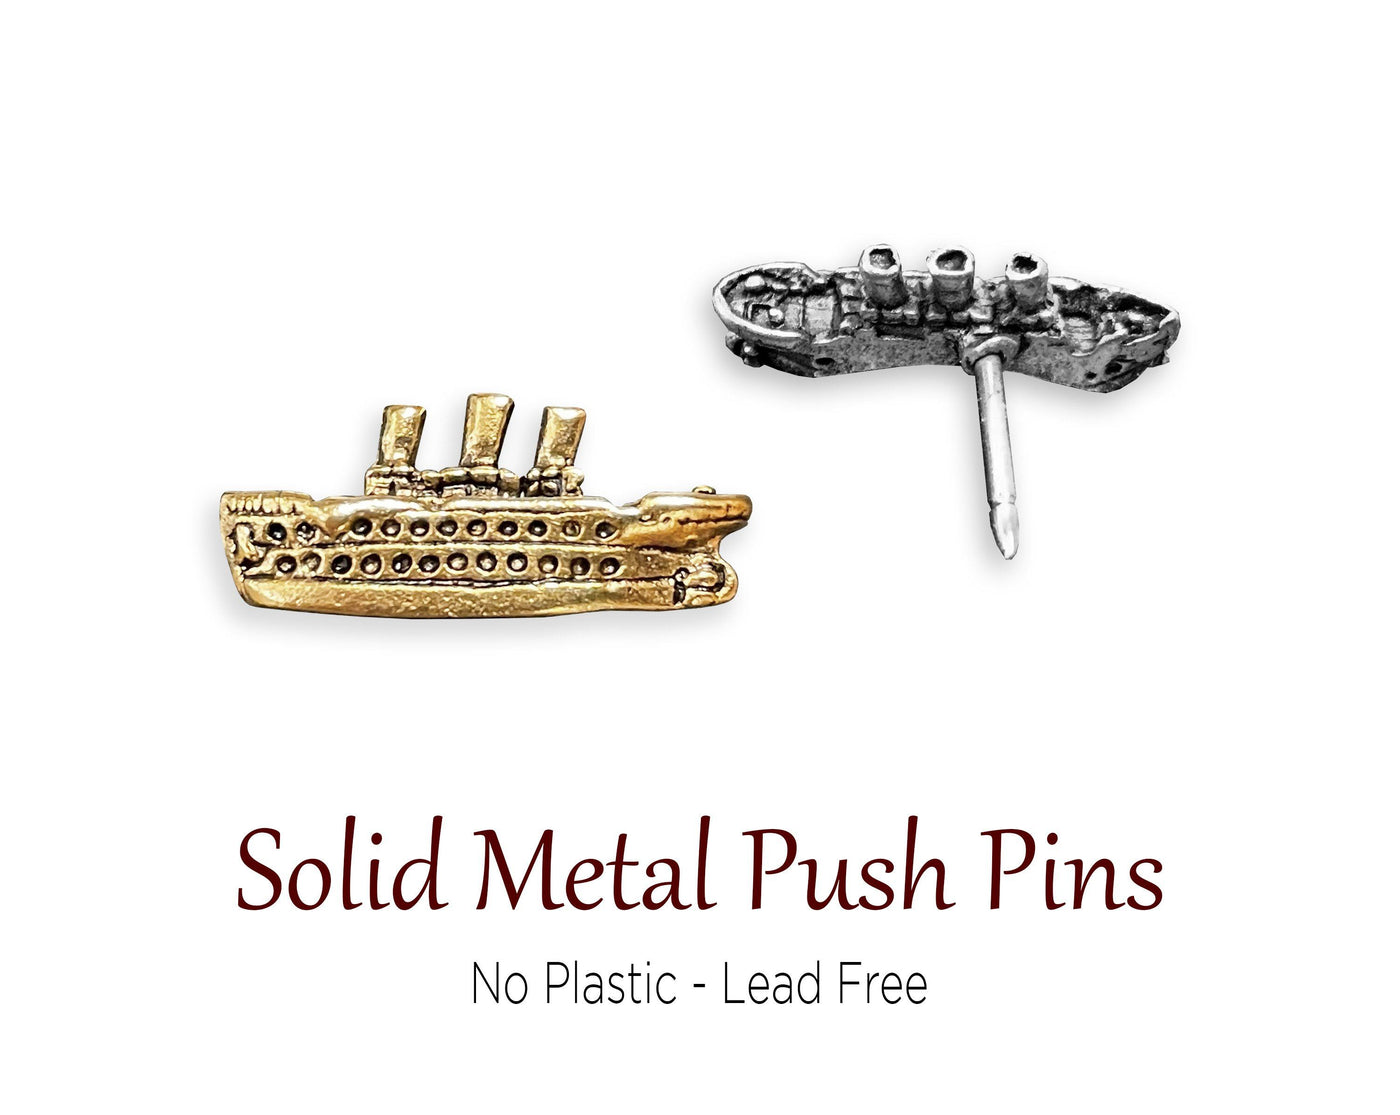 Push Pins - Cruise Ship Push Pins